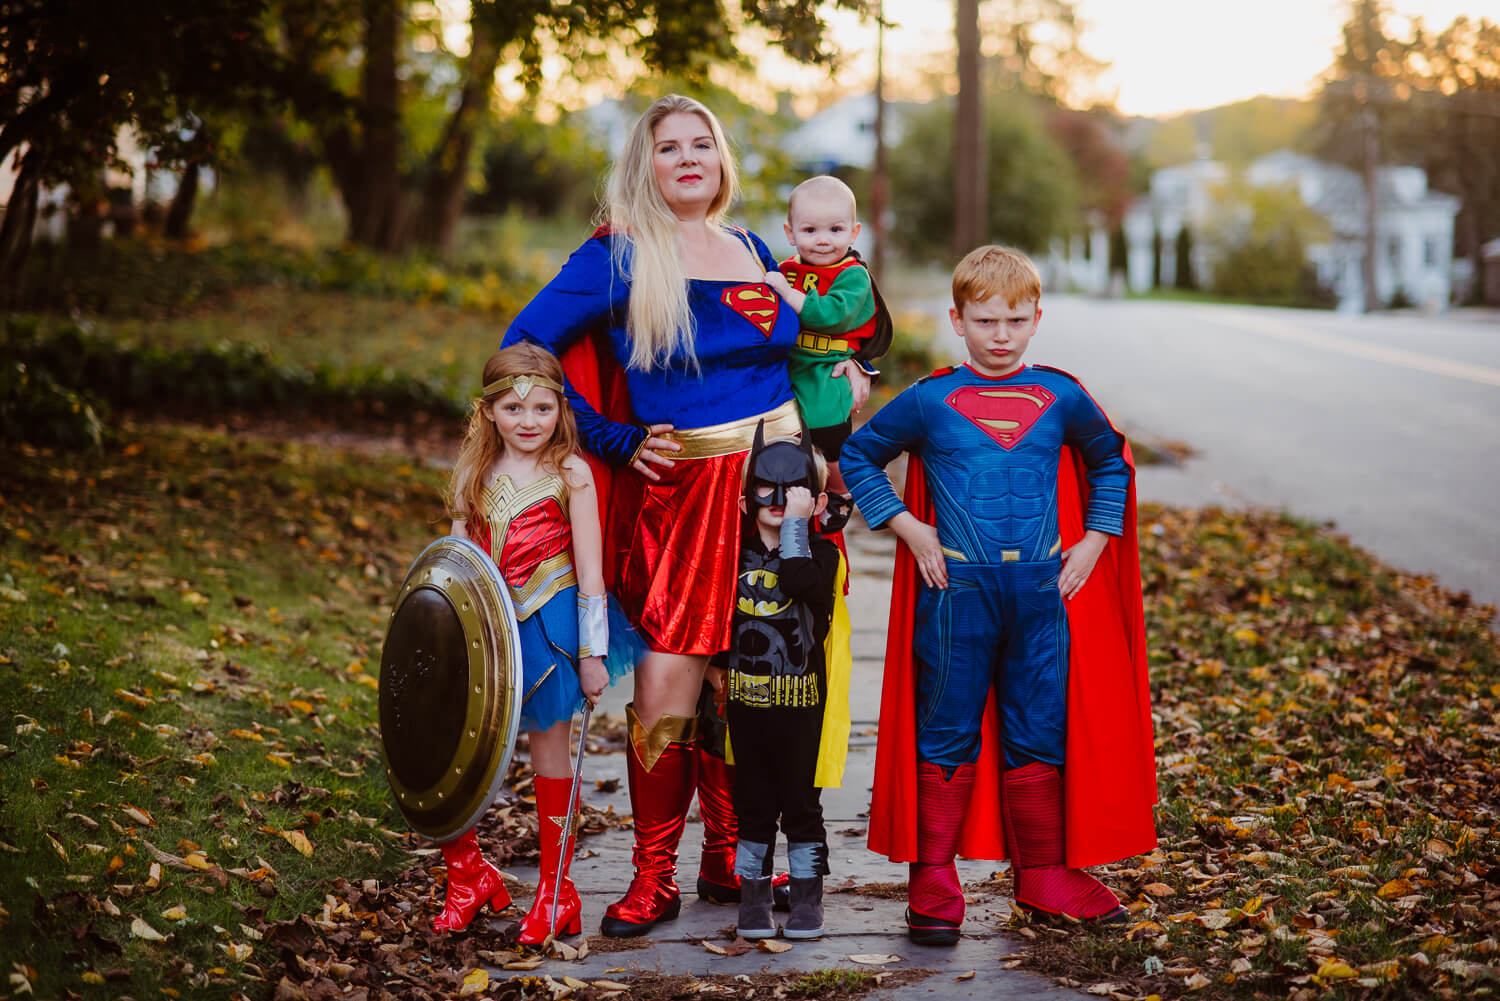 Superhero Team-Up - Wonder Mom and Mini Superman